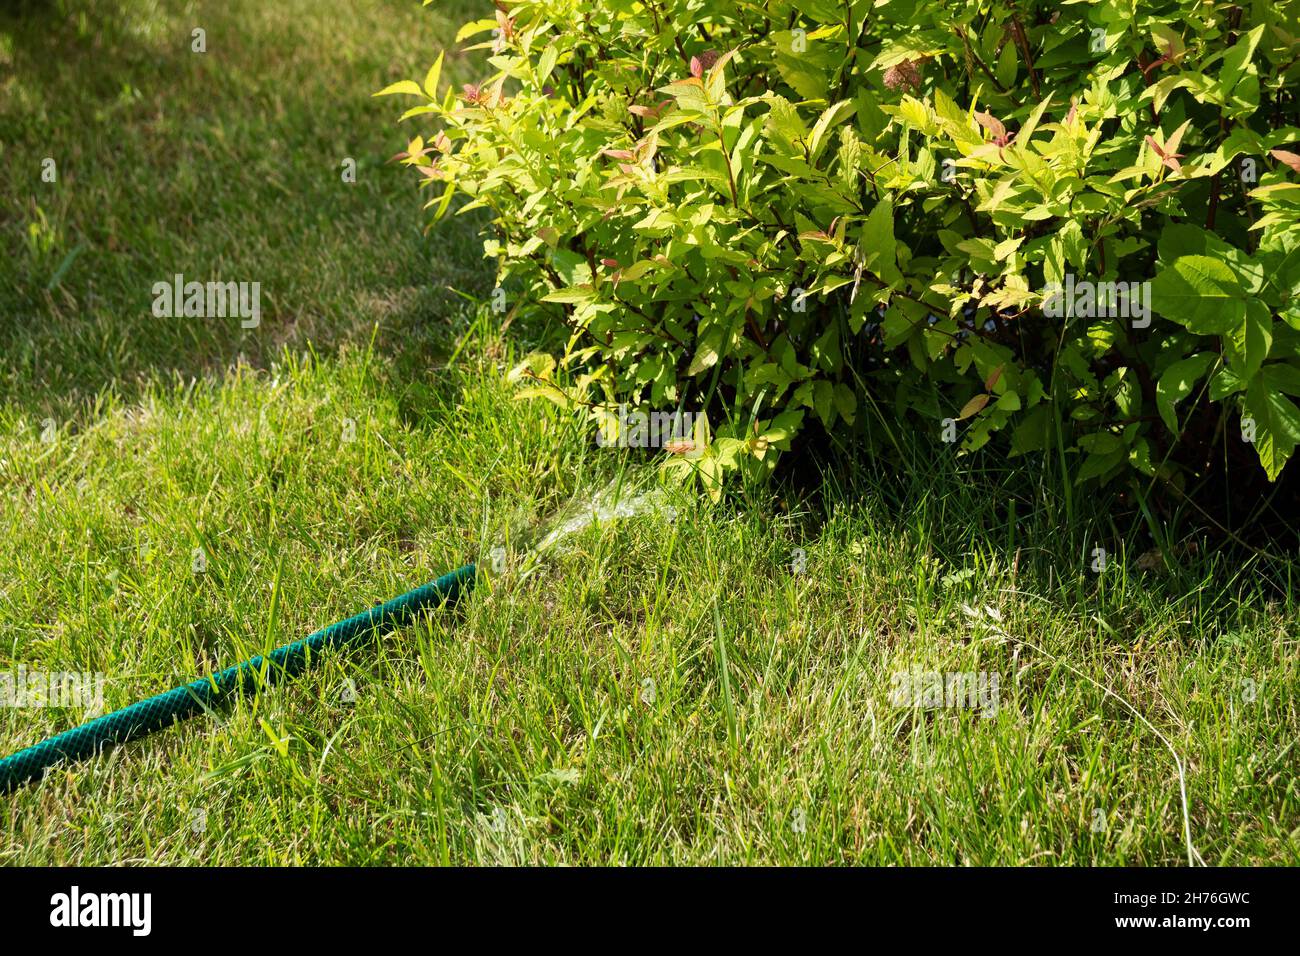 An einem sonnigen Sommertag strömt Wasser aus einem flexiblen Gießschlauch, der auf dem Rasen unter einem Spirea-Busch der japanischen Sorte Goldflame liegt. Stockfoto